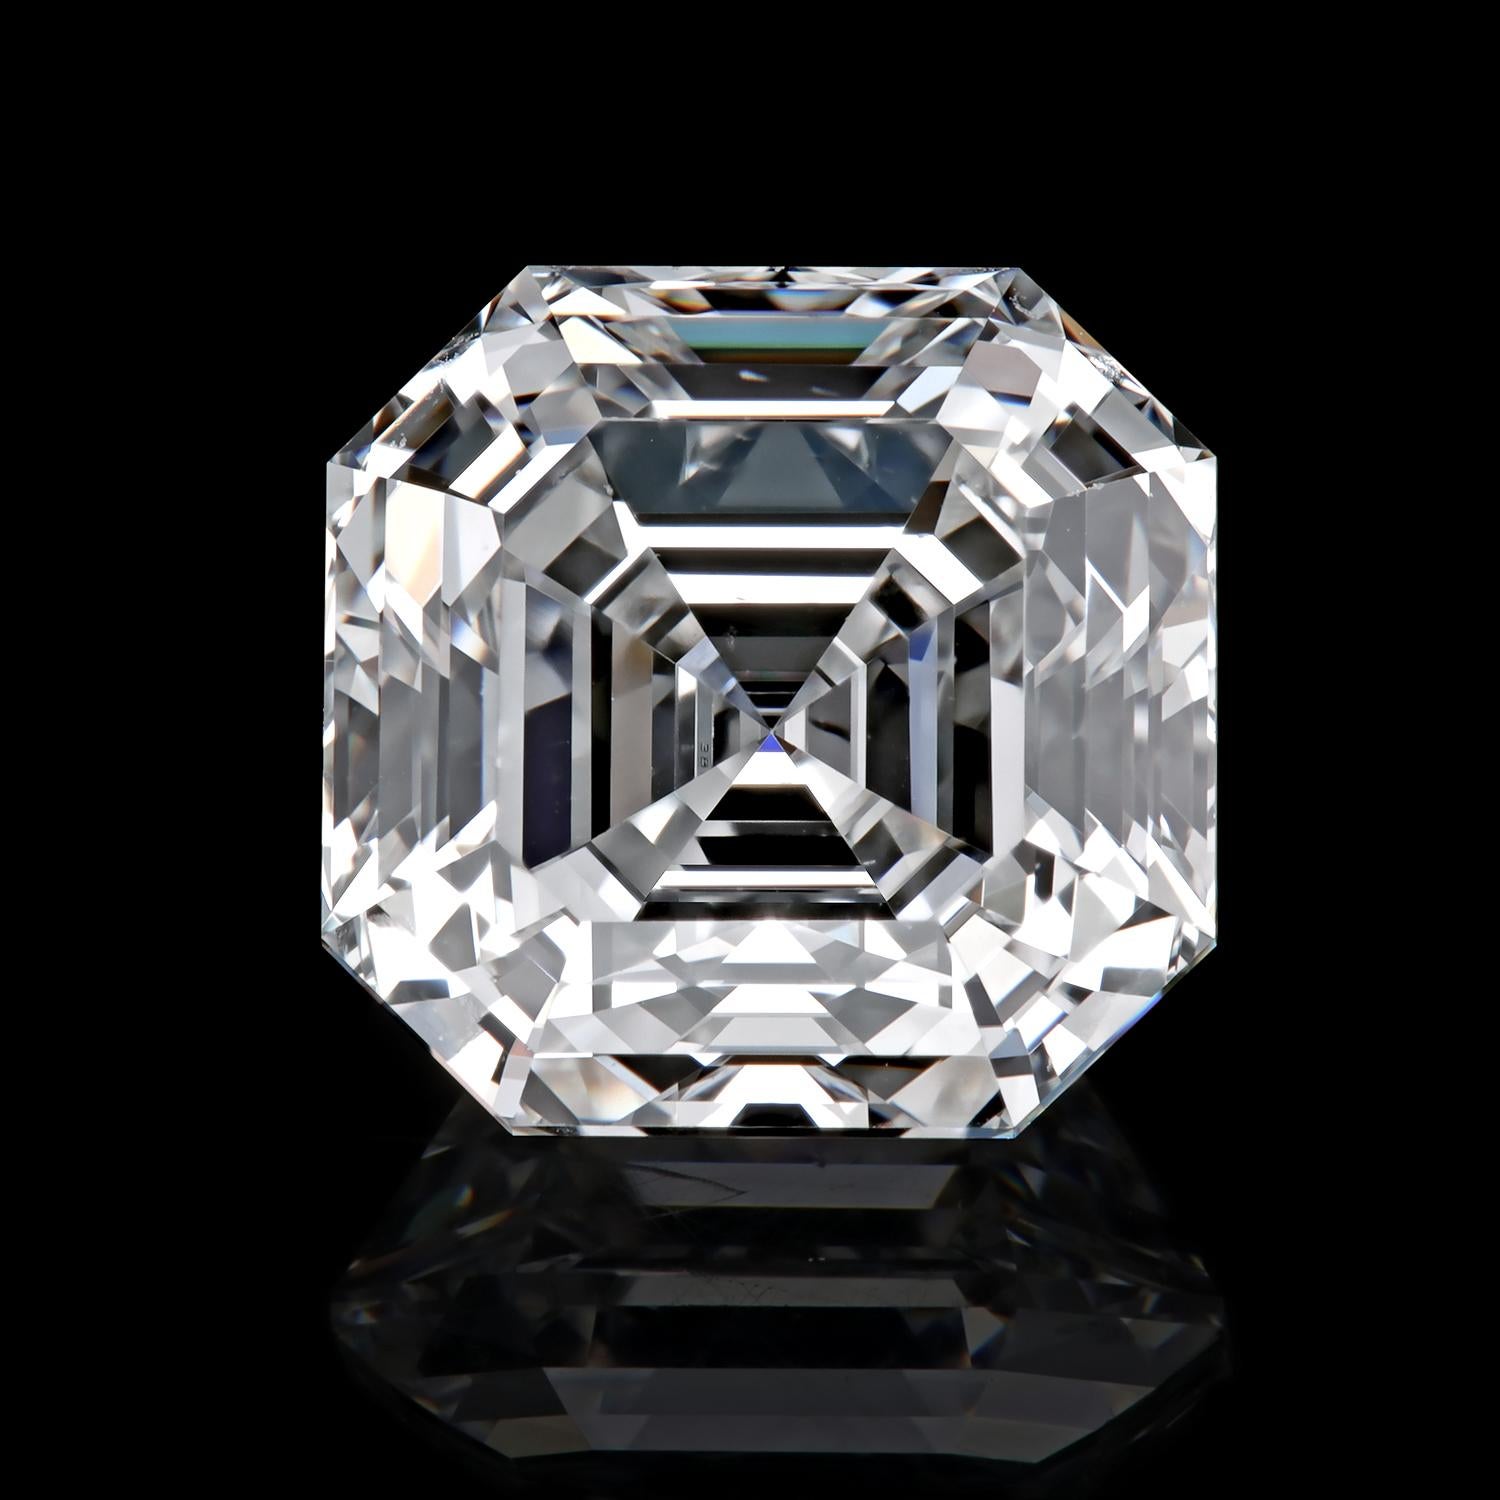 Atemberaubender True Antique™ Diamant im Asscher-Schliff 1,83 ct F/VS1; GIA 12323397.

Der Stein ist lose, aber die Juweliere von Leon Mege arbeiten gerne mit Ihnen an einer individuellen Fassung, für die ein Aufpreis berechnet wird. Bitte setzen